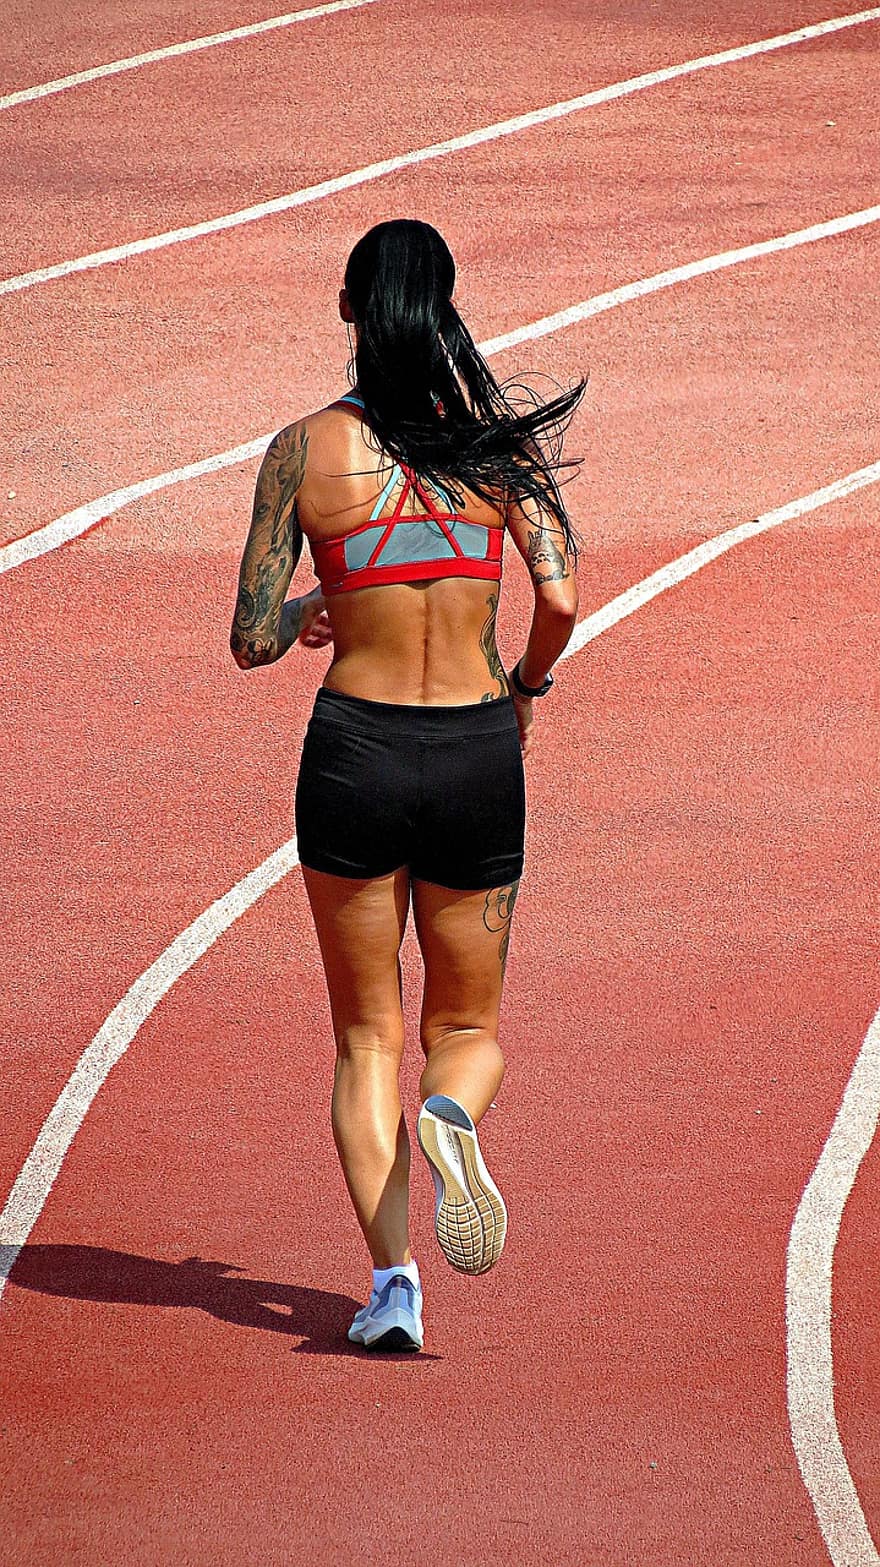 běh, zdatnost, běžecká dráha, žena, sportovní, wellness, cvičení, běhání, sport, sportovec, zdravý životní styl